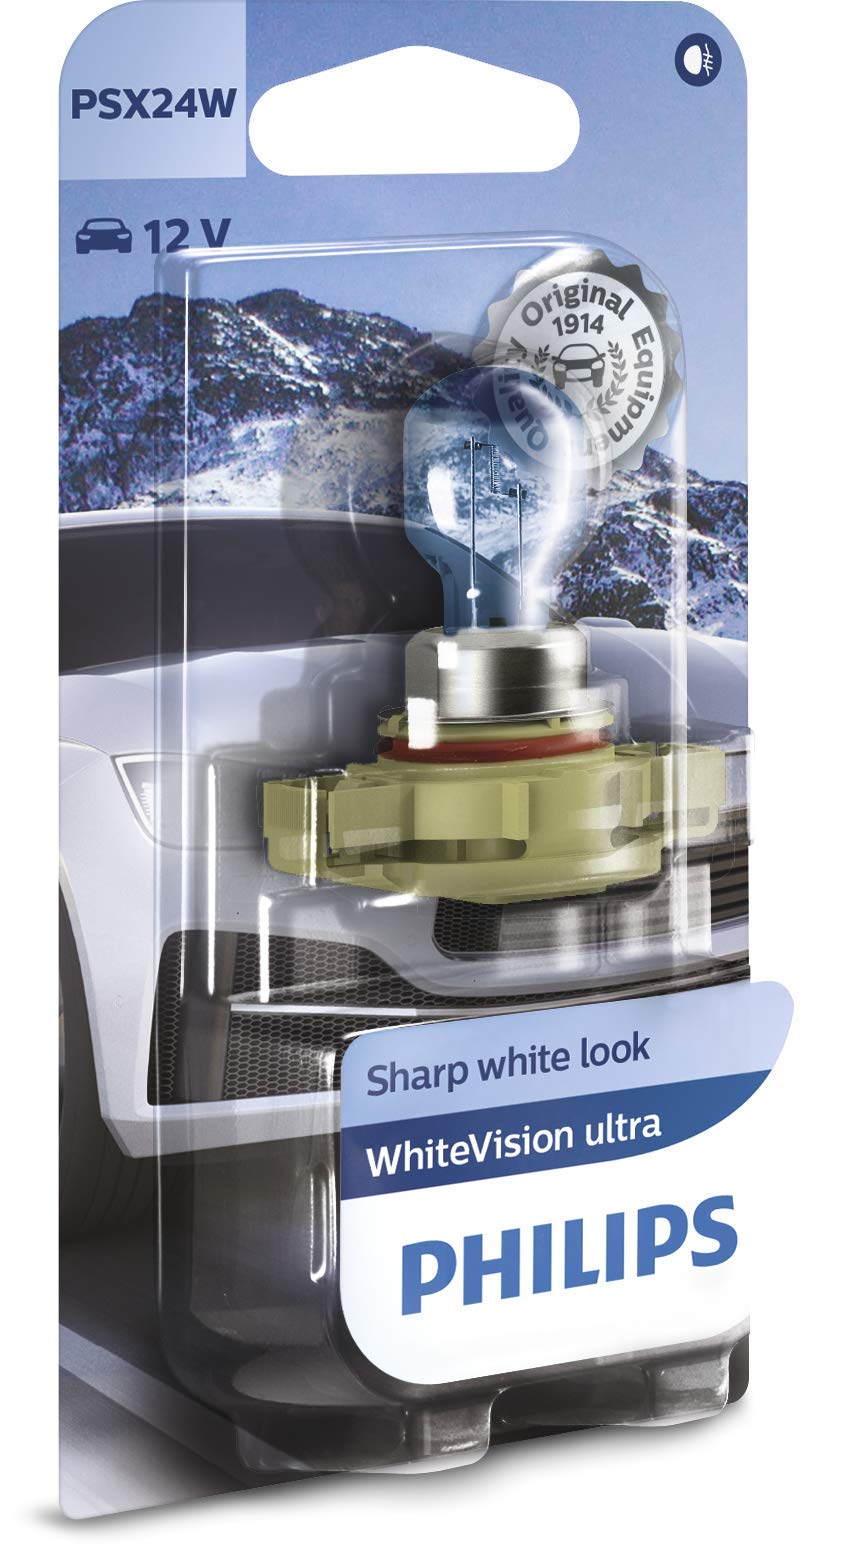 Philips 545828 WhiteVision ultra PSX24W Nebellampe, Einzelblister von Philips automotive lighting